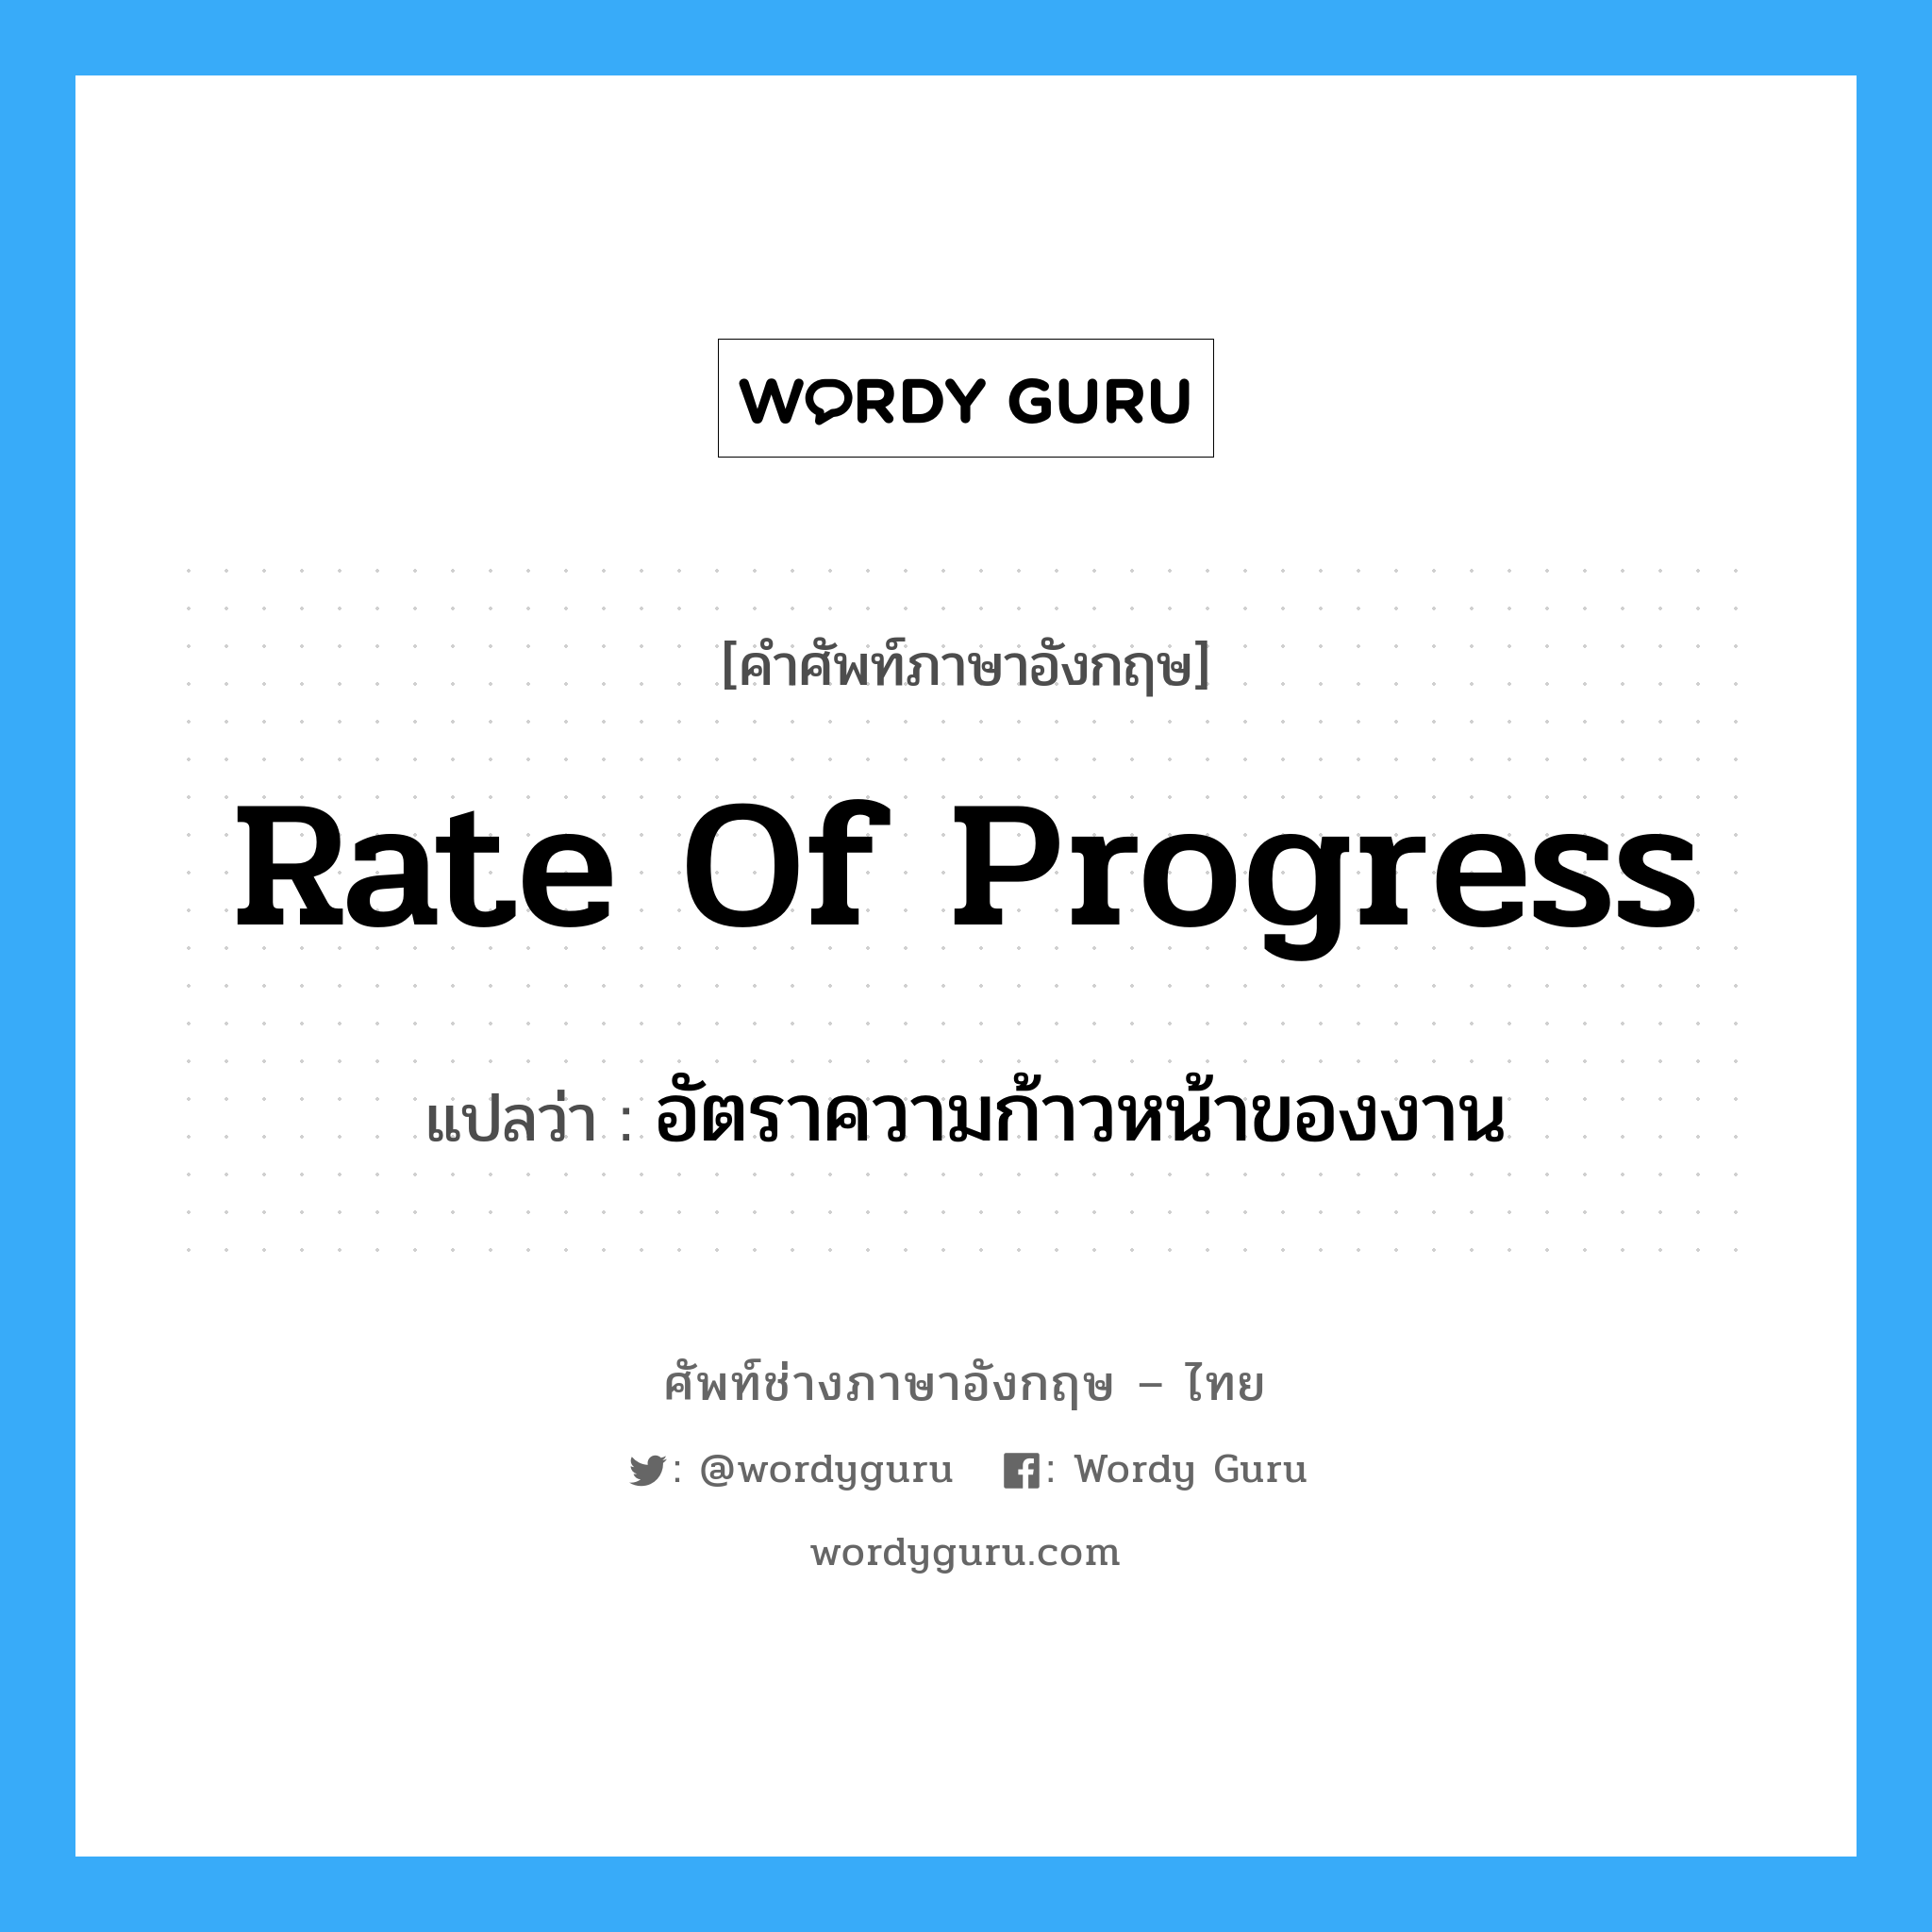 อัตราความก้าวหน้าของงาน ภาษาอังกฤษ?, คำศัพท์ช่างภาษาอังกฤษ - ไทย อัตราความก้าวหน้าของงาน คำศัพท์ภาษาอังกฤษ อัตราความก้าวหน้าของงาน แปลว่า Rate of Progress